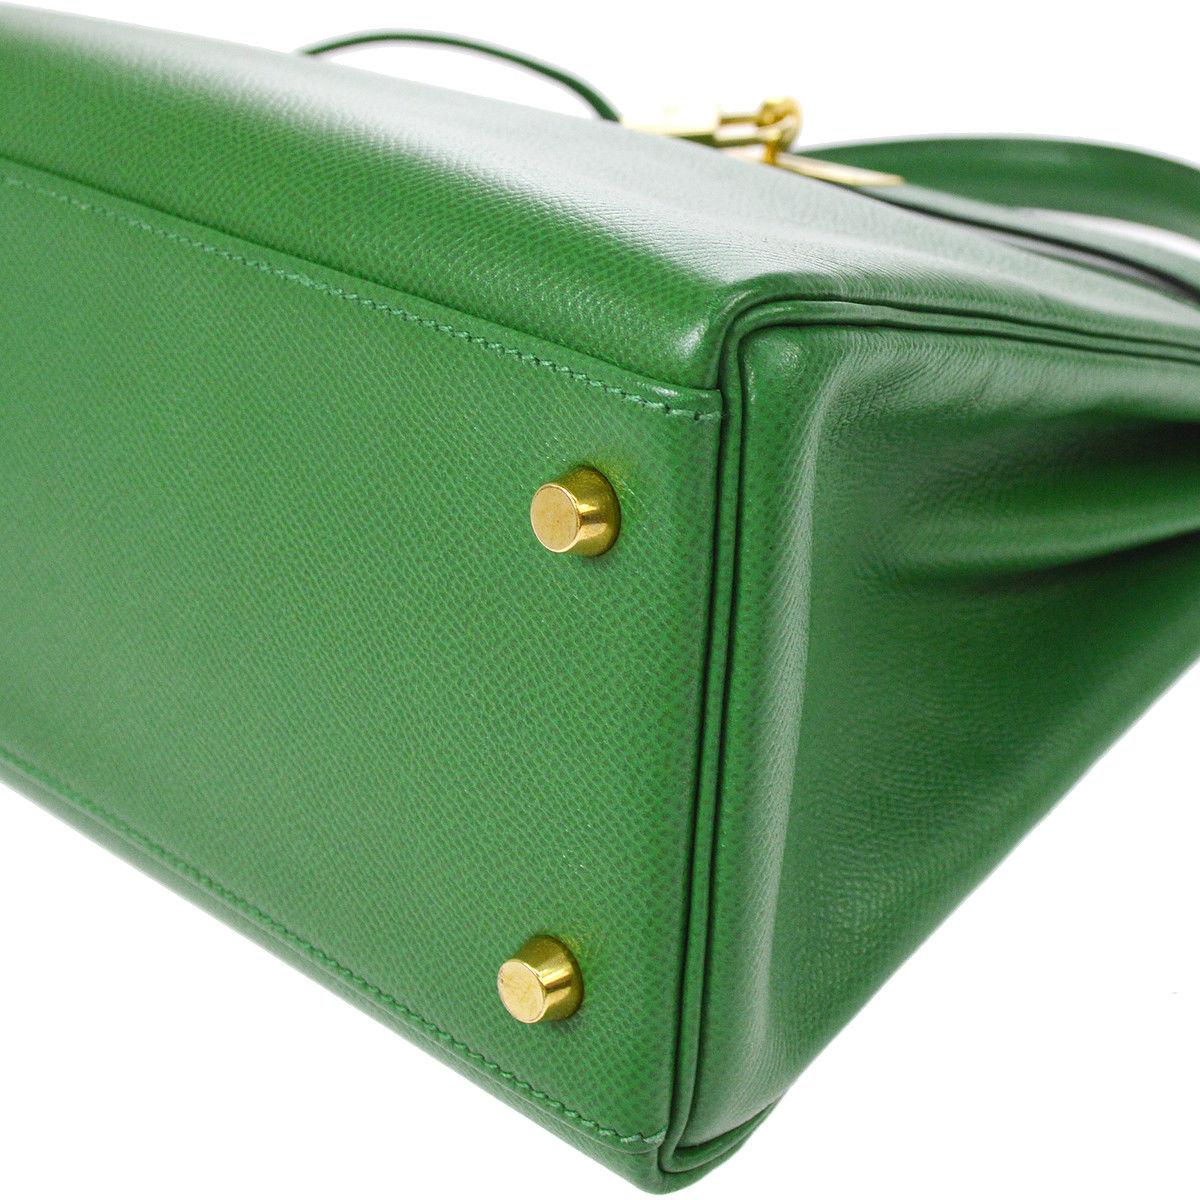 Hermes Kelly 32 Green Leather Gold Top Handle Satchel Shoulder Bag 2